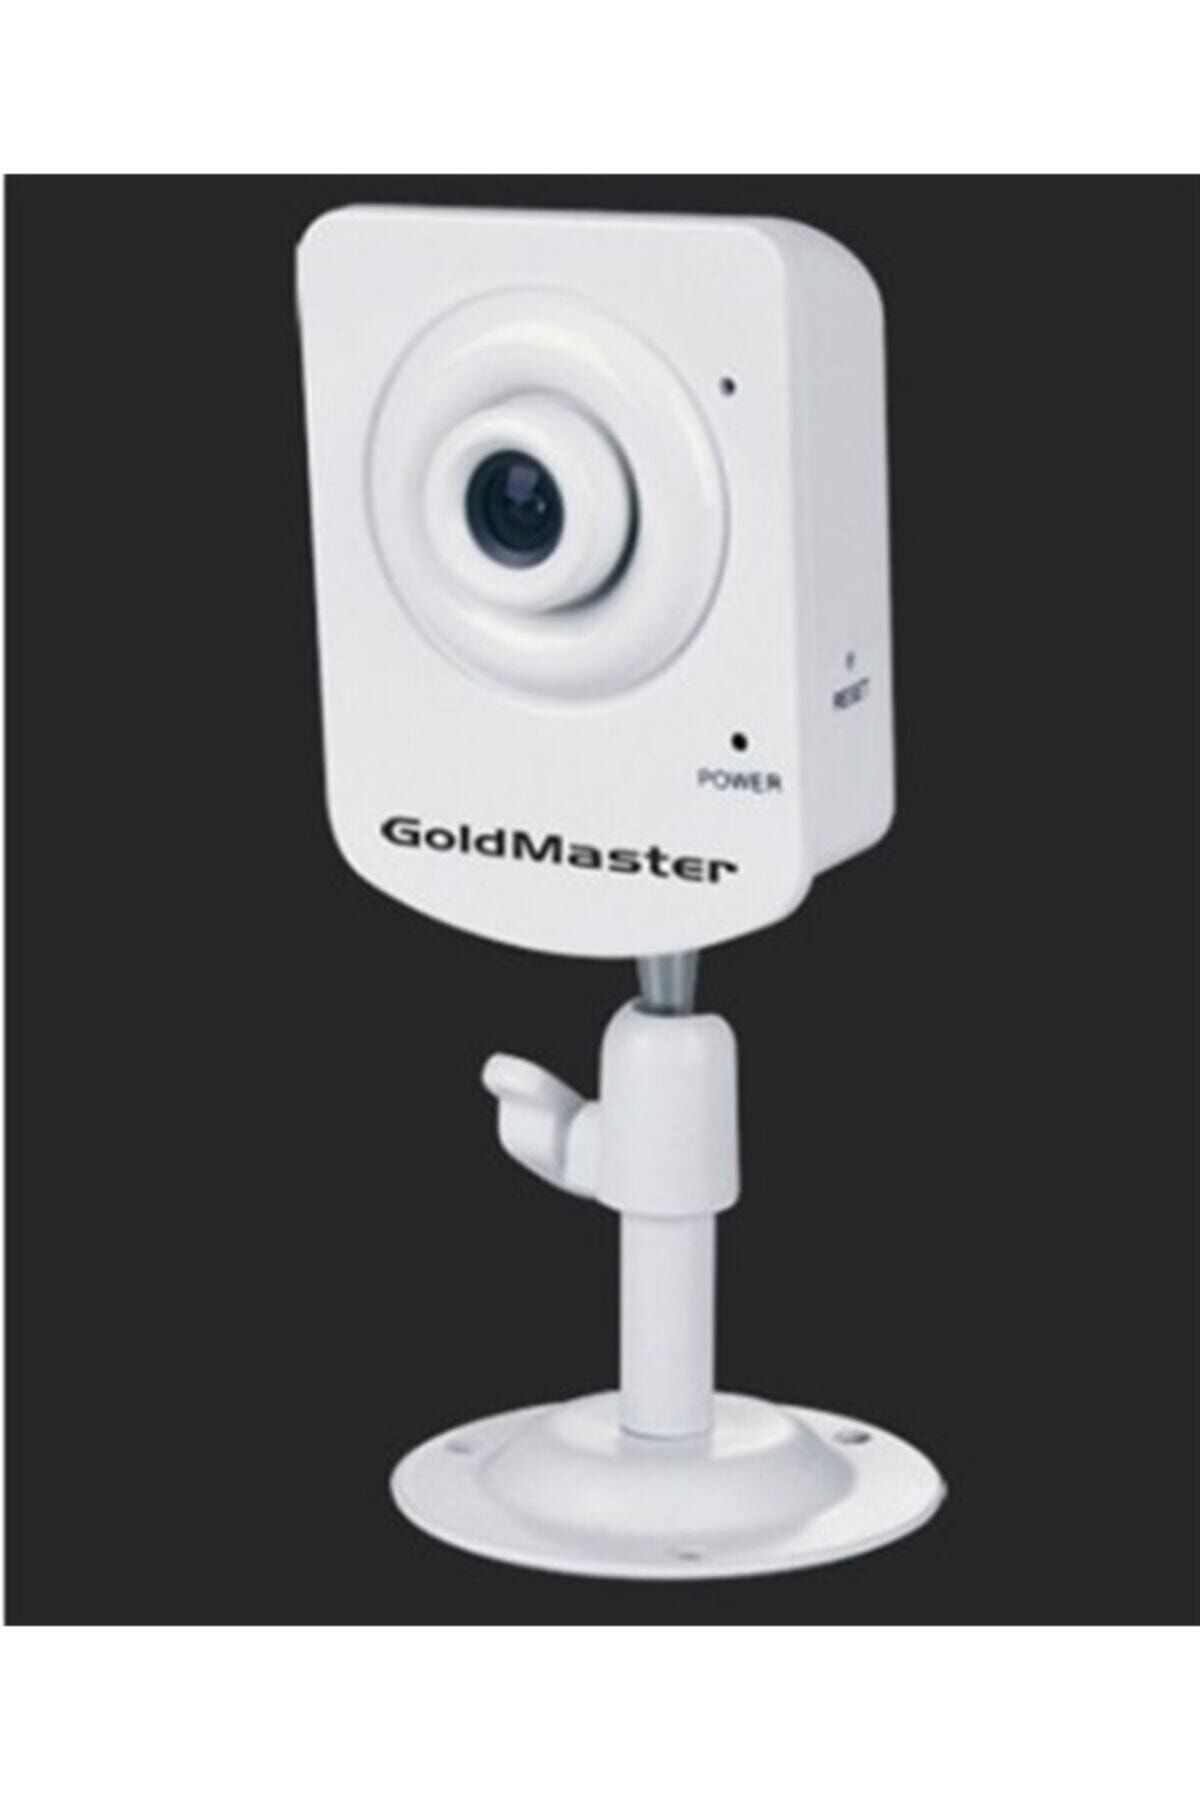 REWEL Goldmaster Sc-401-ı Güvenlik Kamerası (siyah)